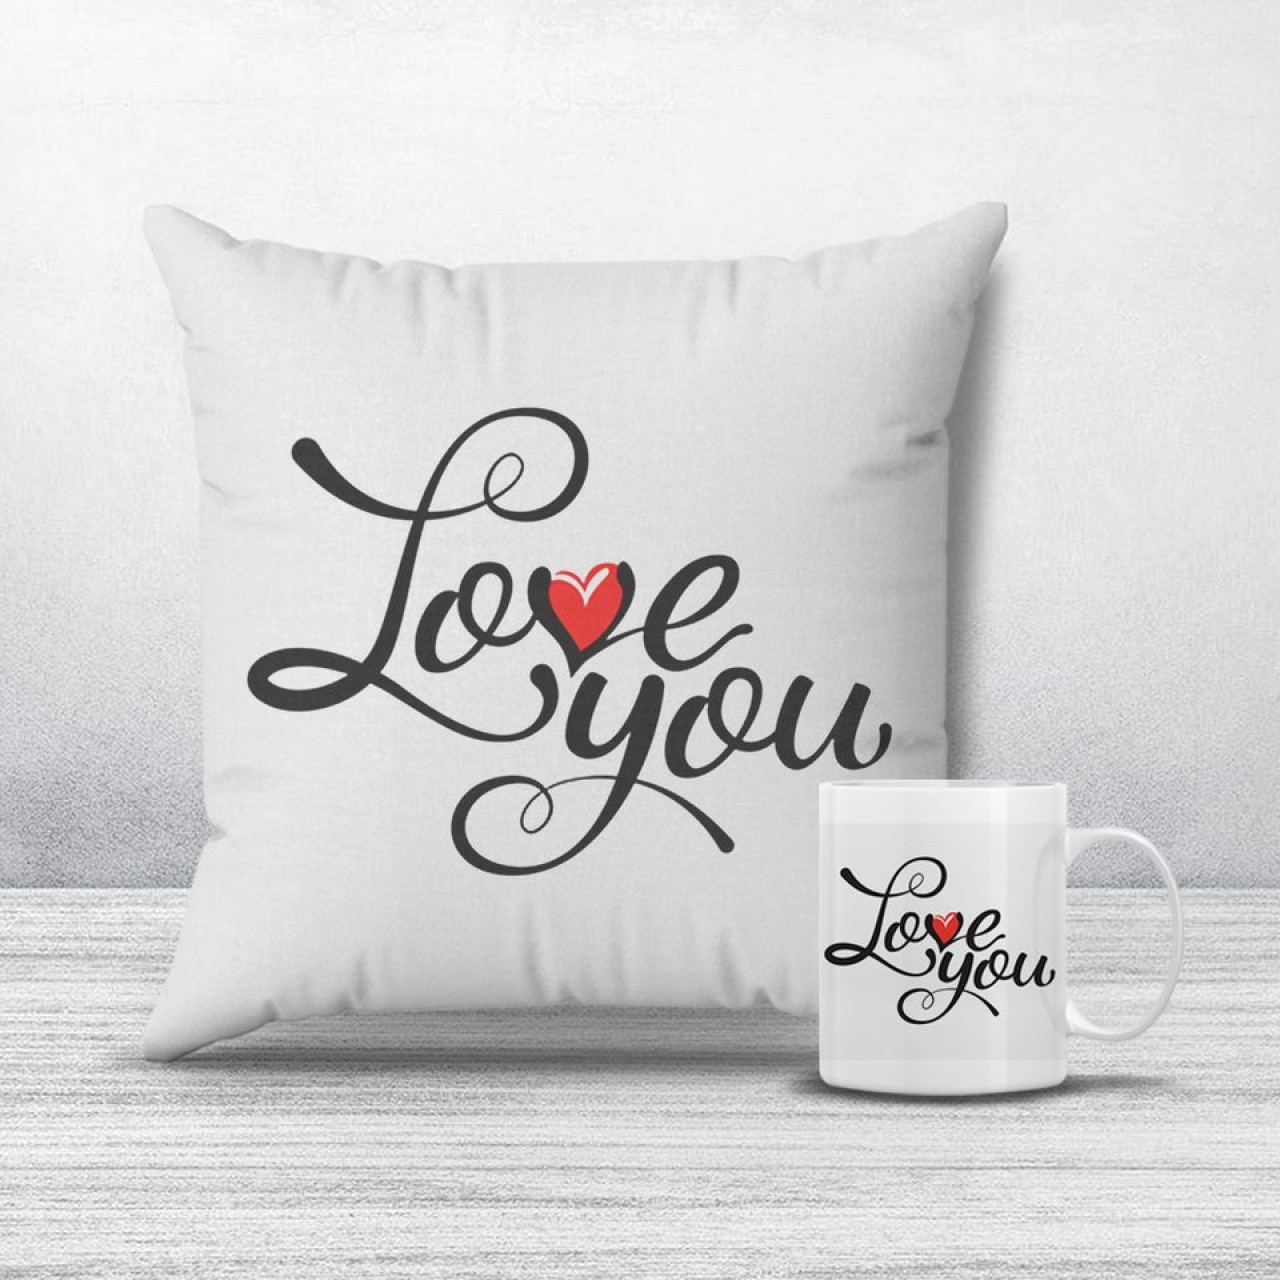 Love you cushion & mug combo